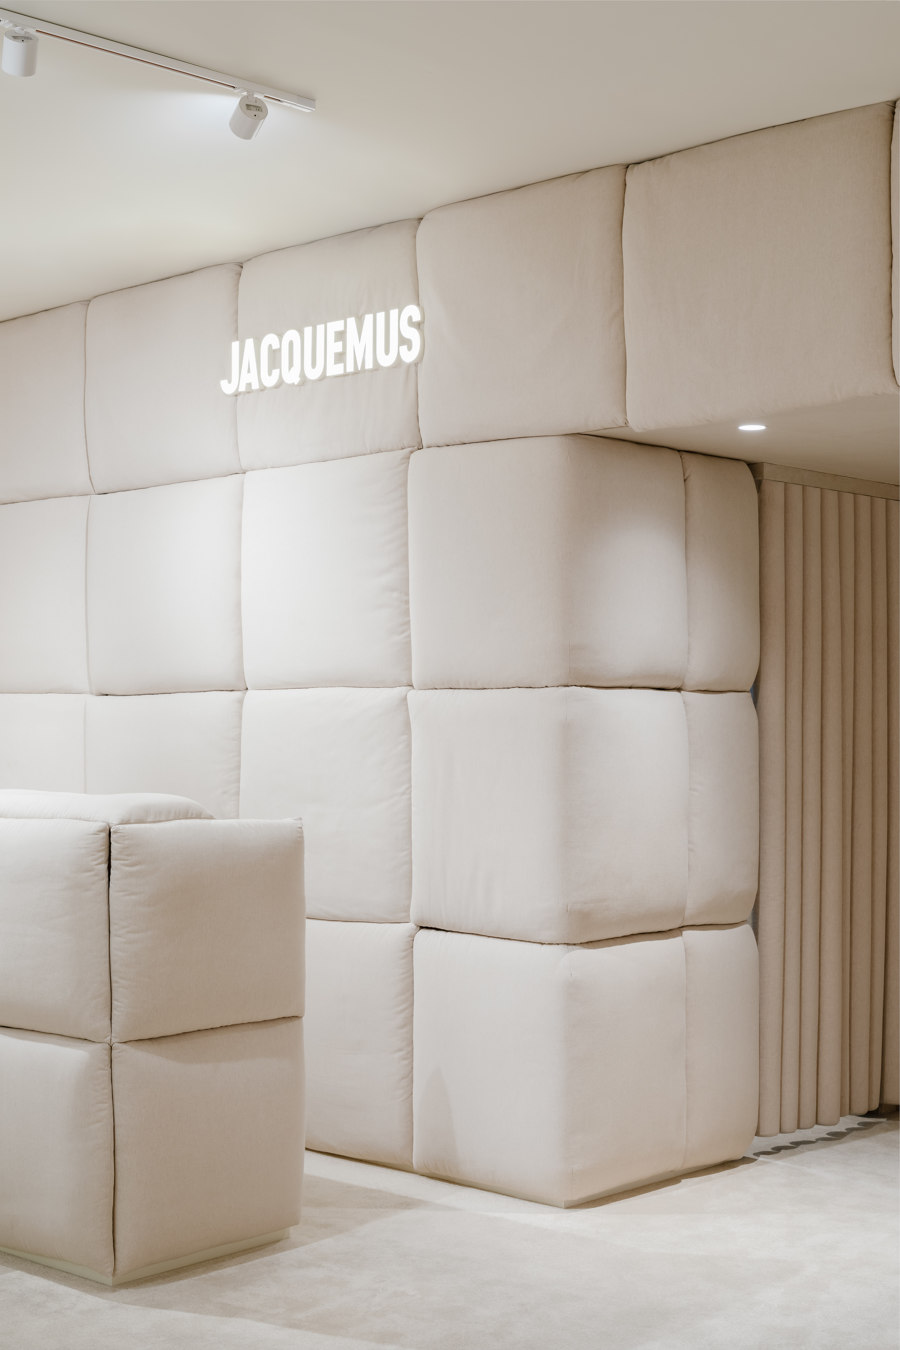 Jacquemus Store di AMO | Negozi - Interni